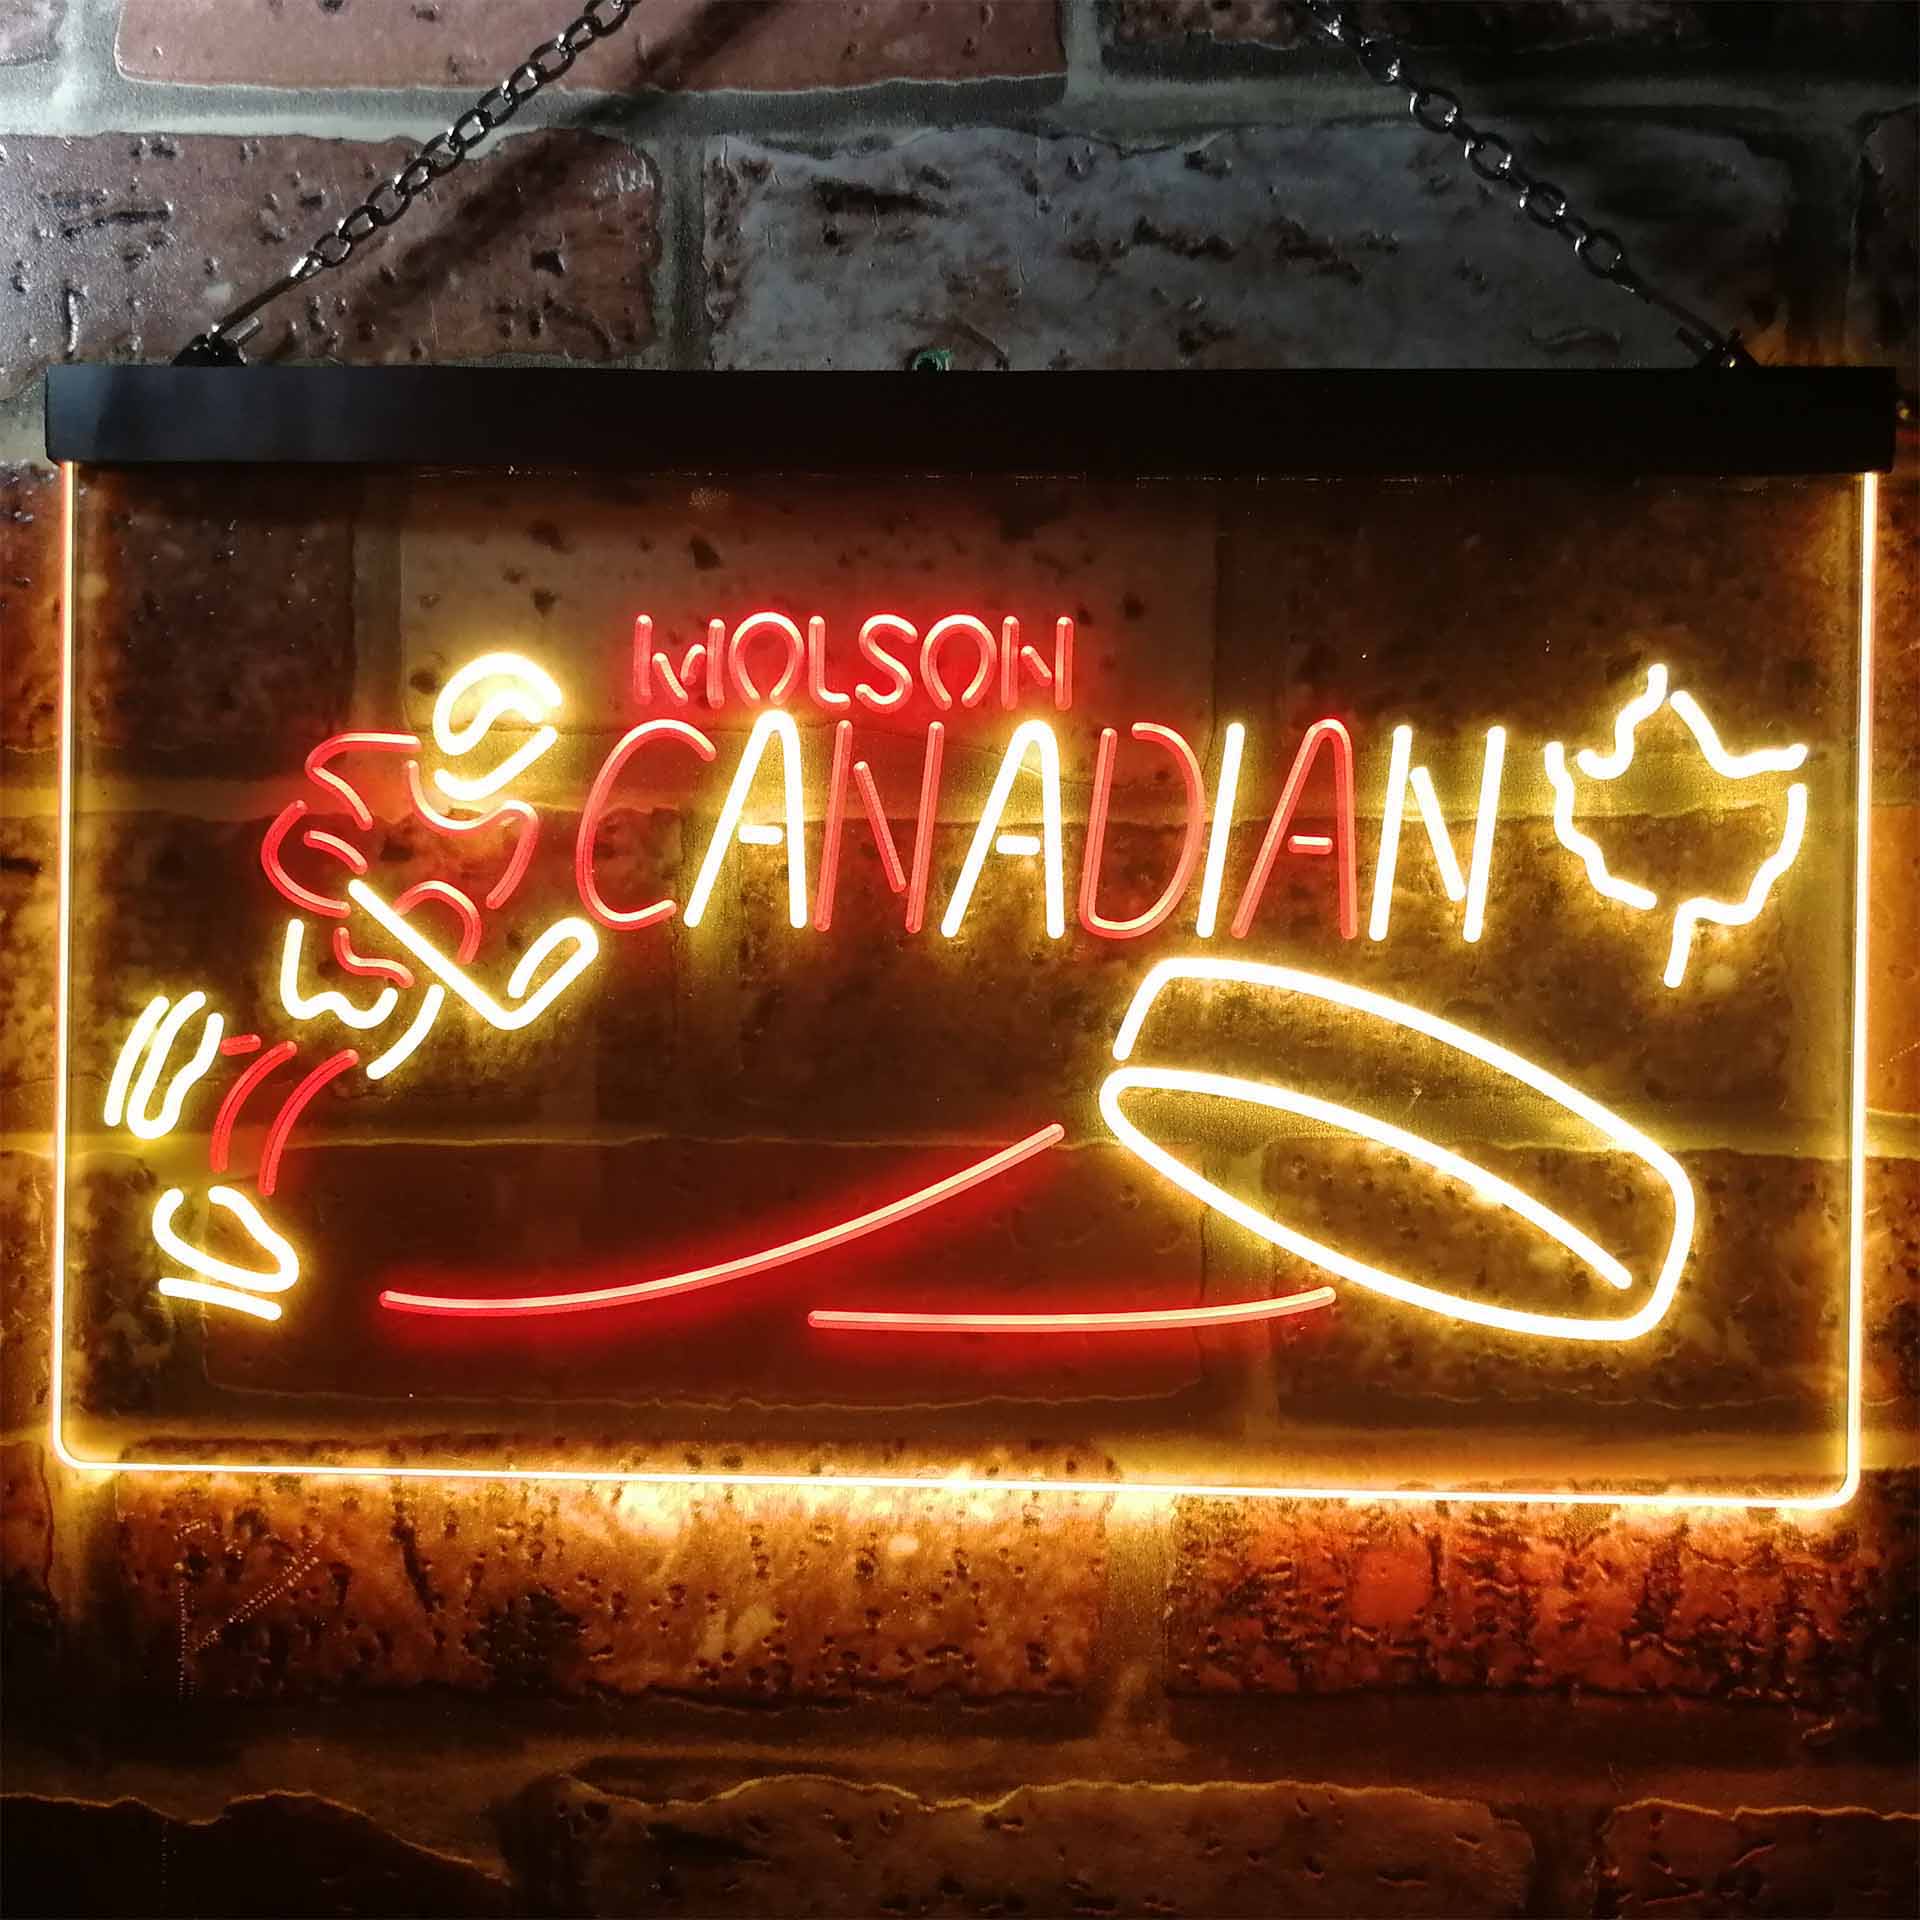 Molson Canadian Hockey Neon LED Sign